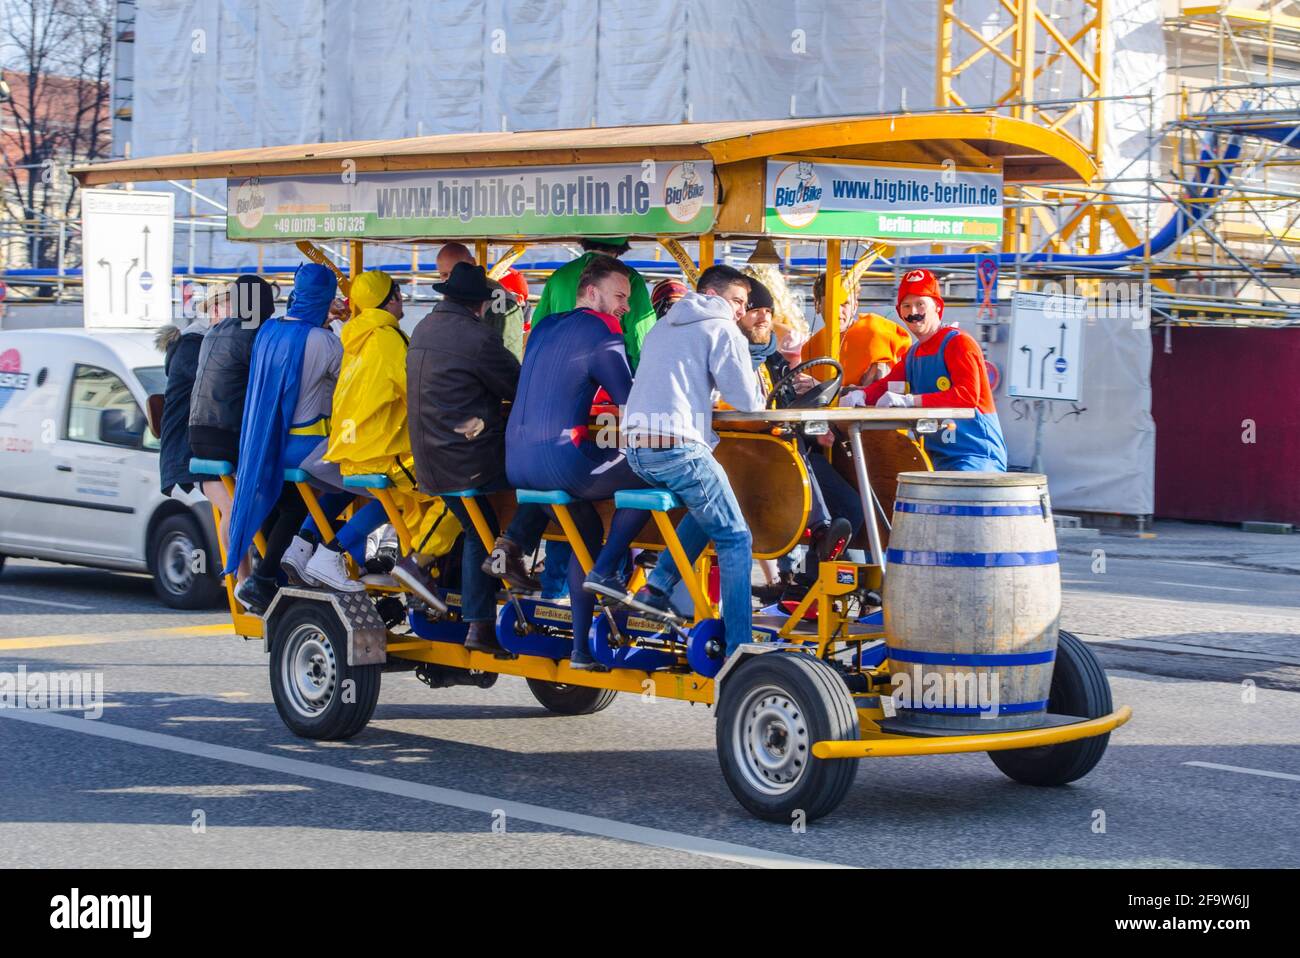 BERLIN, 12. MÄRZ 2015: Big Bike ist eine wichtige Touristenattraktion in berlin für Menschen, die die ganze Stadt sehen und dabei Bier trinken möchten Stockfoto